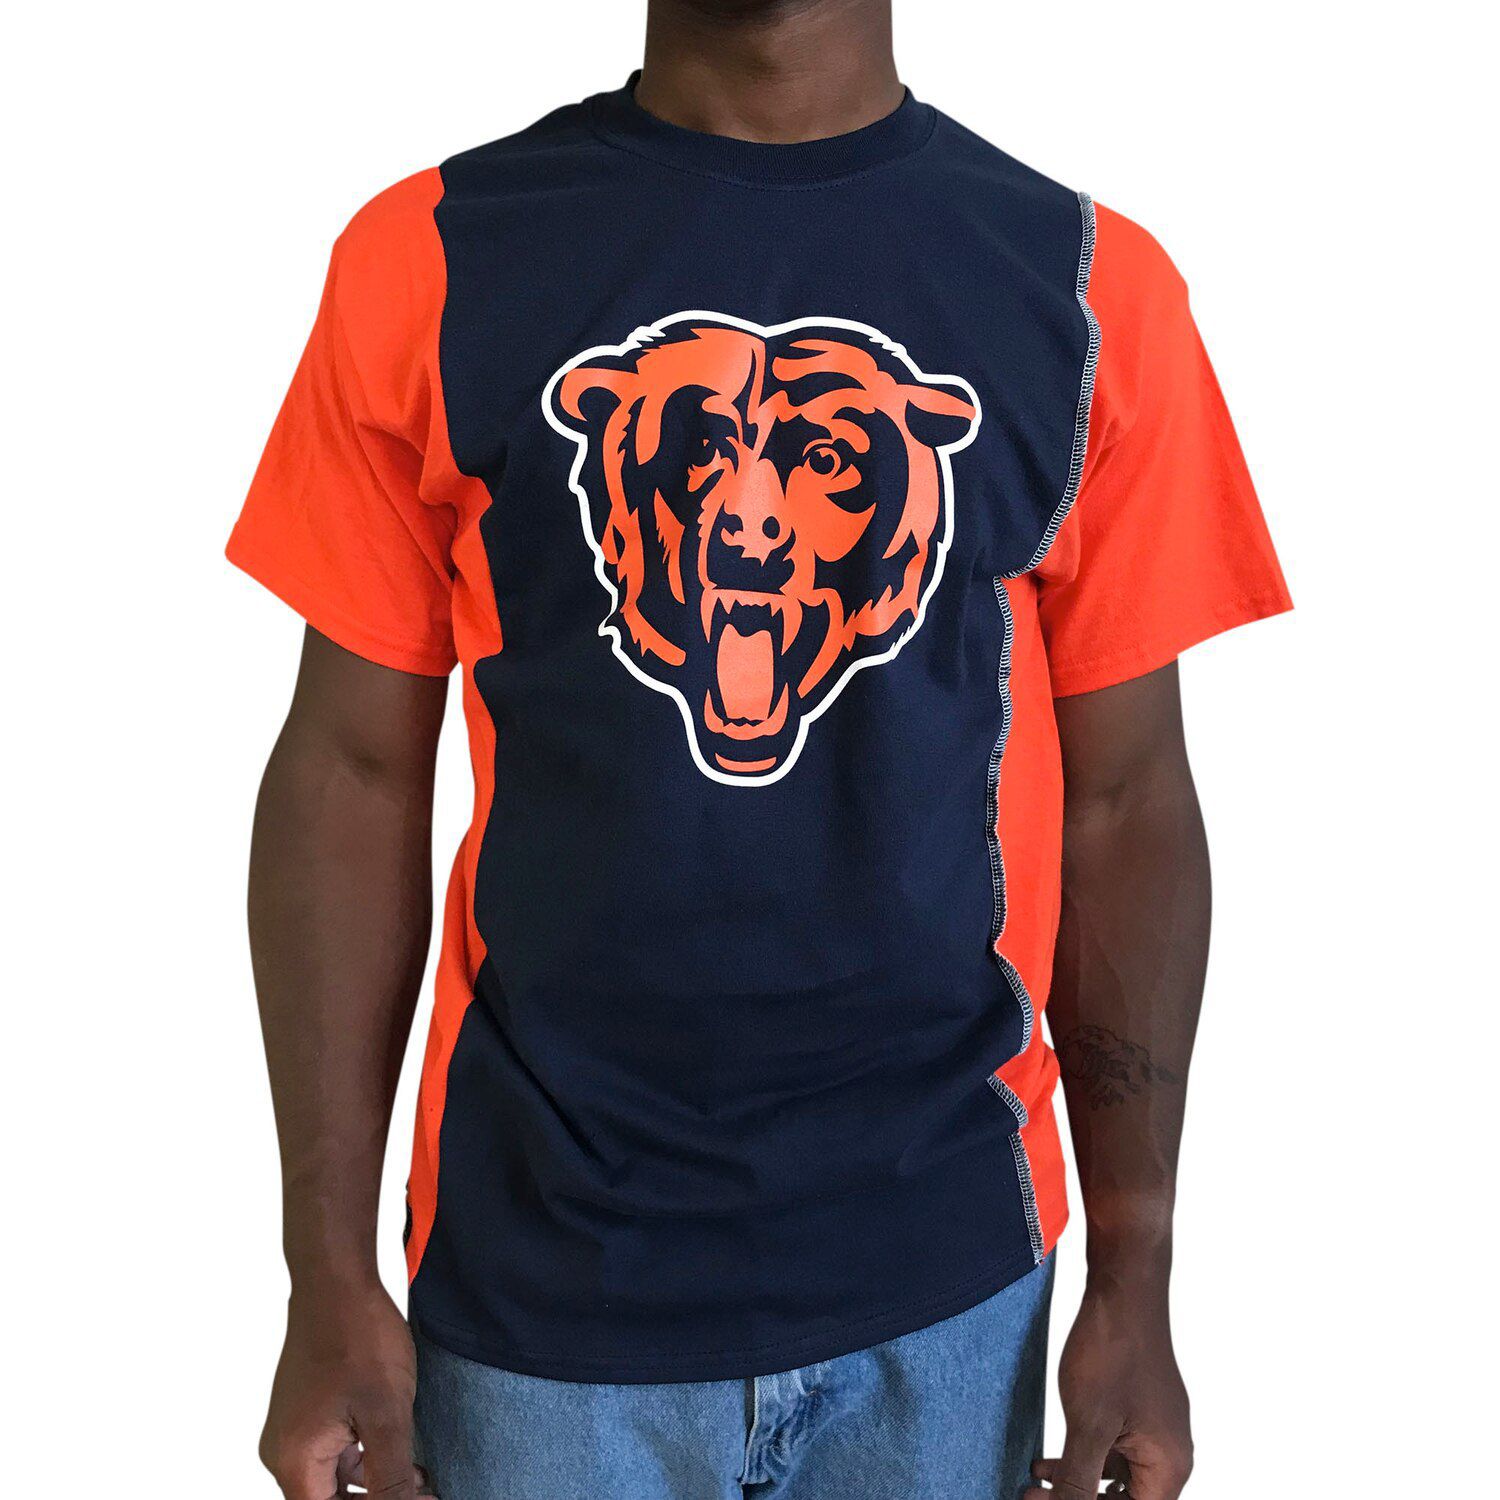 chicago bears dress shirt